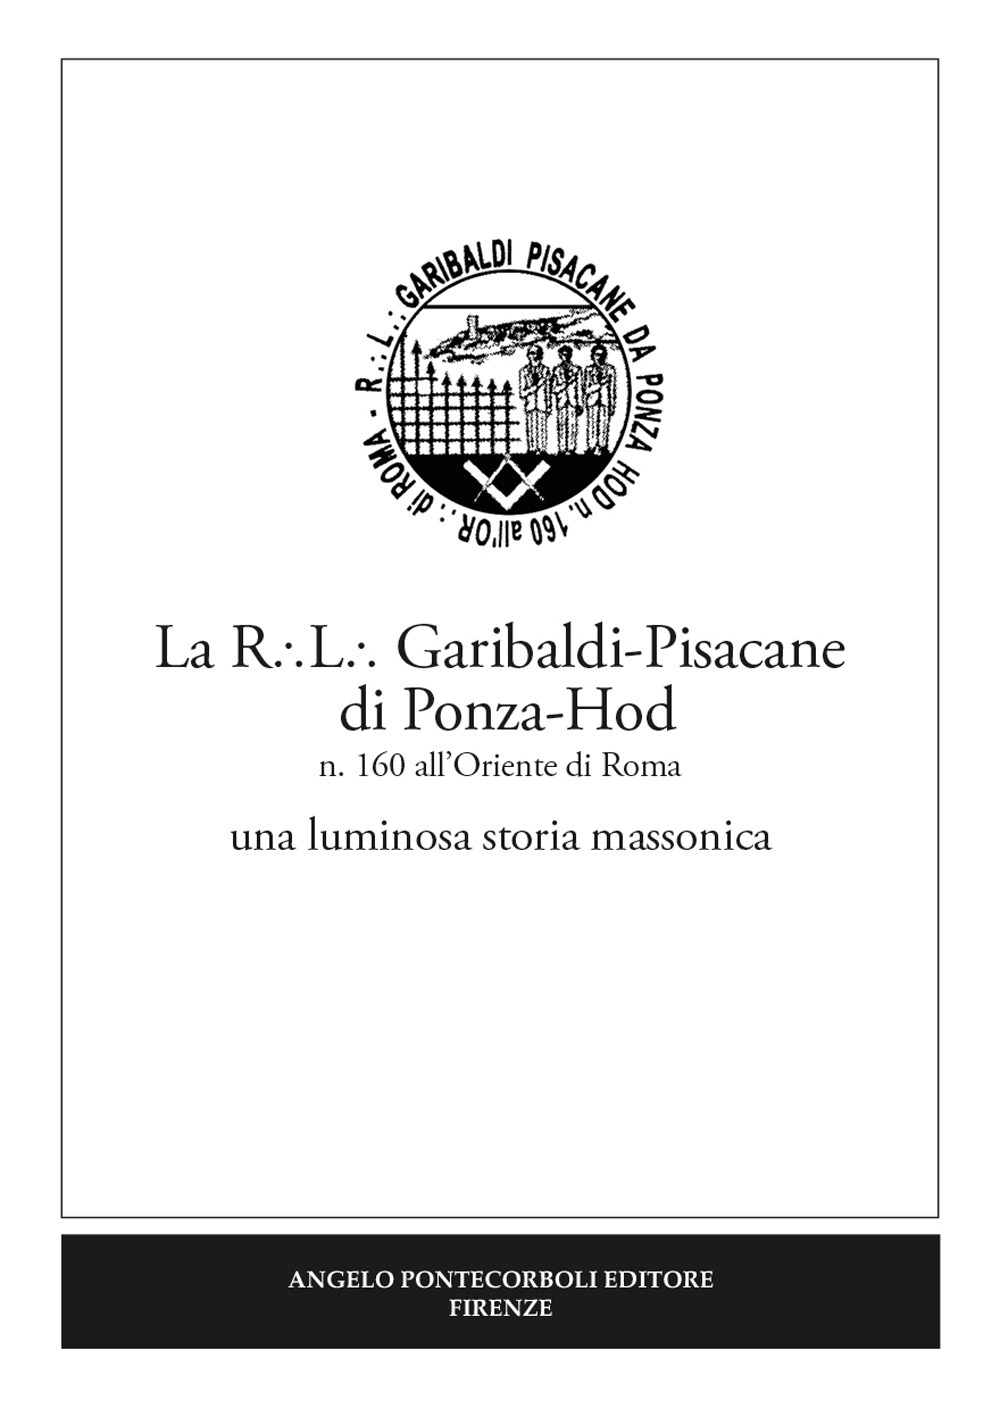 La R.L. Garibaldi-Pisacane di Ponza-Hod. una luminosa storia massonica. Nuova ediz.